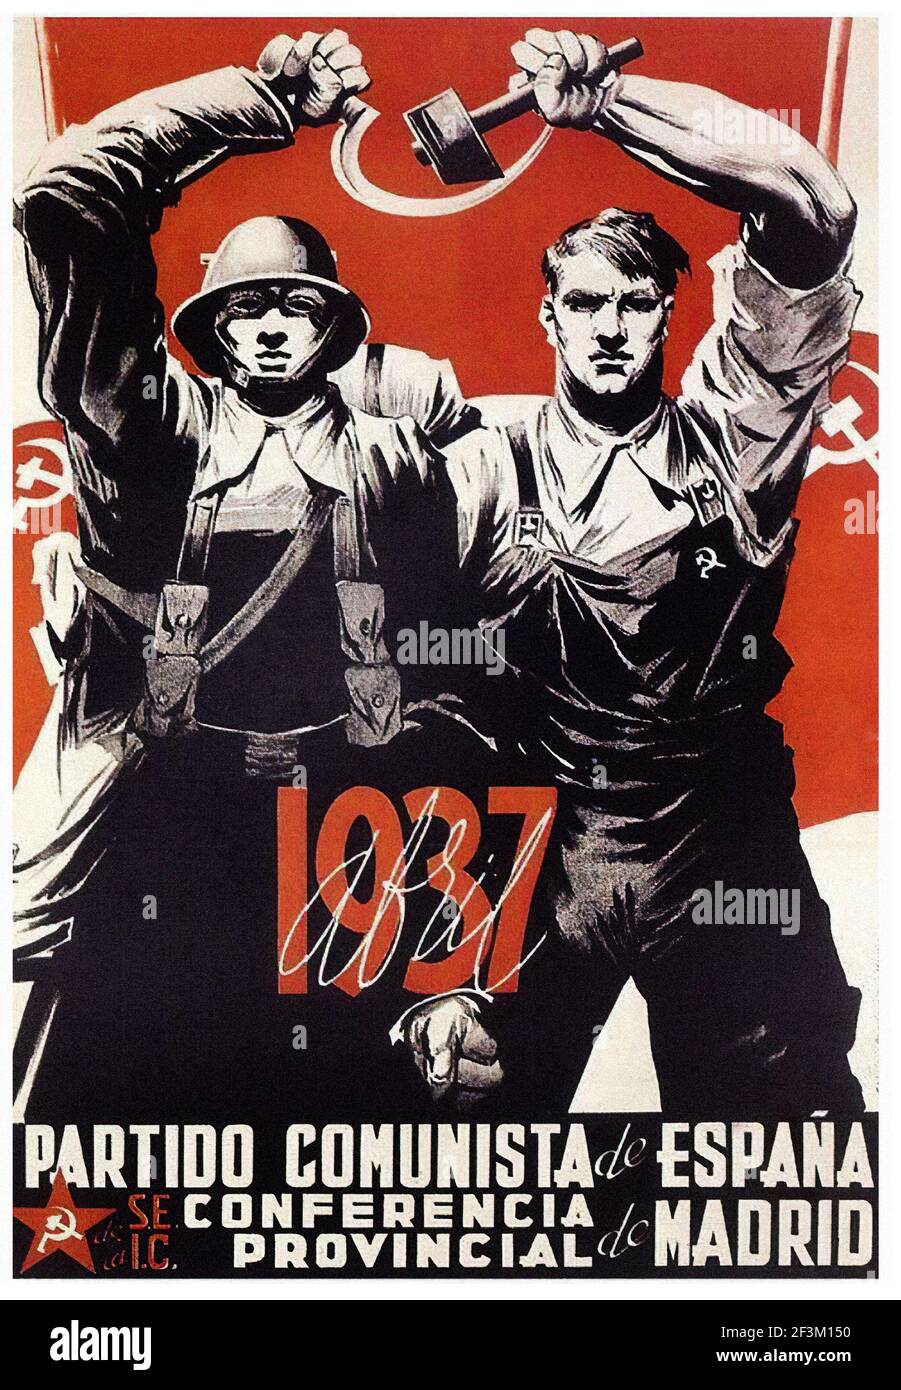 Cartel de propaganda de la Guerra Civil Española. Conferencia provincial de Madrid, Partido Comunista de España, 1937. Foto de stock